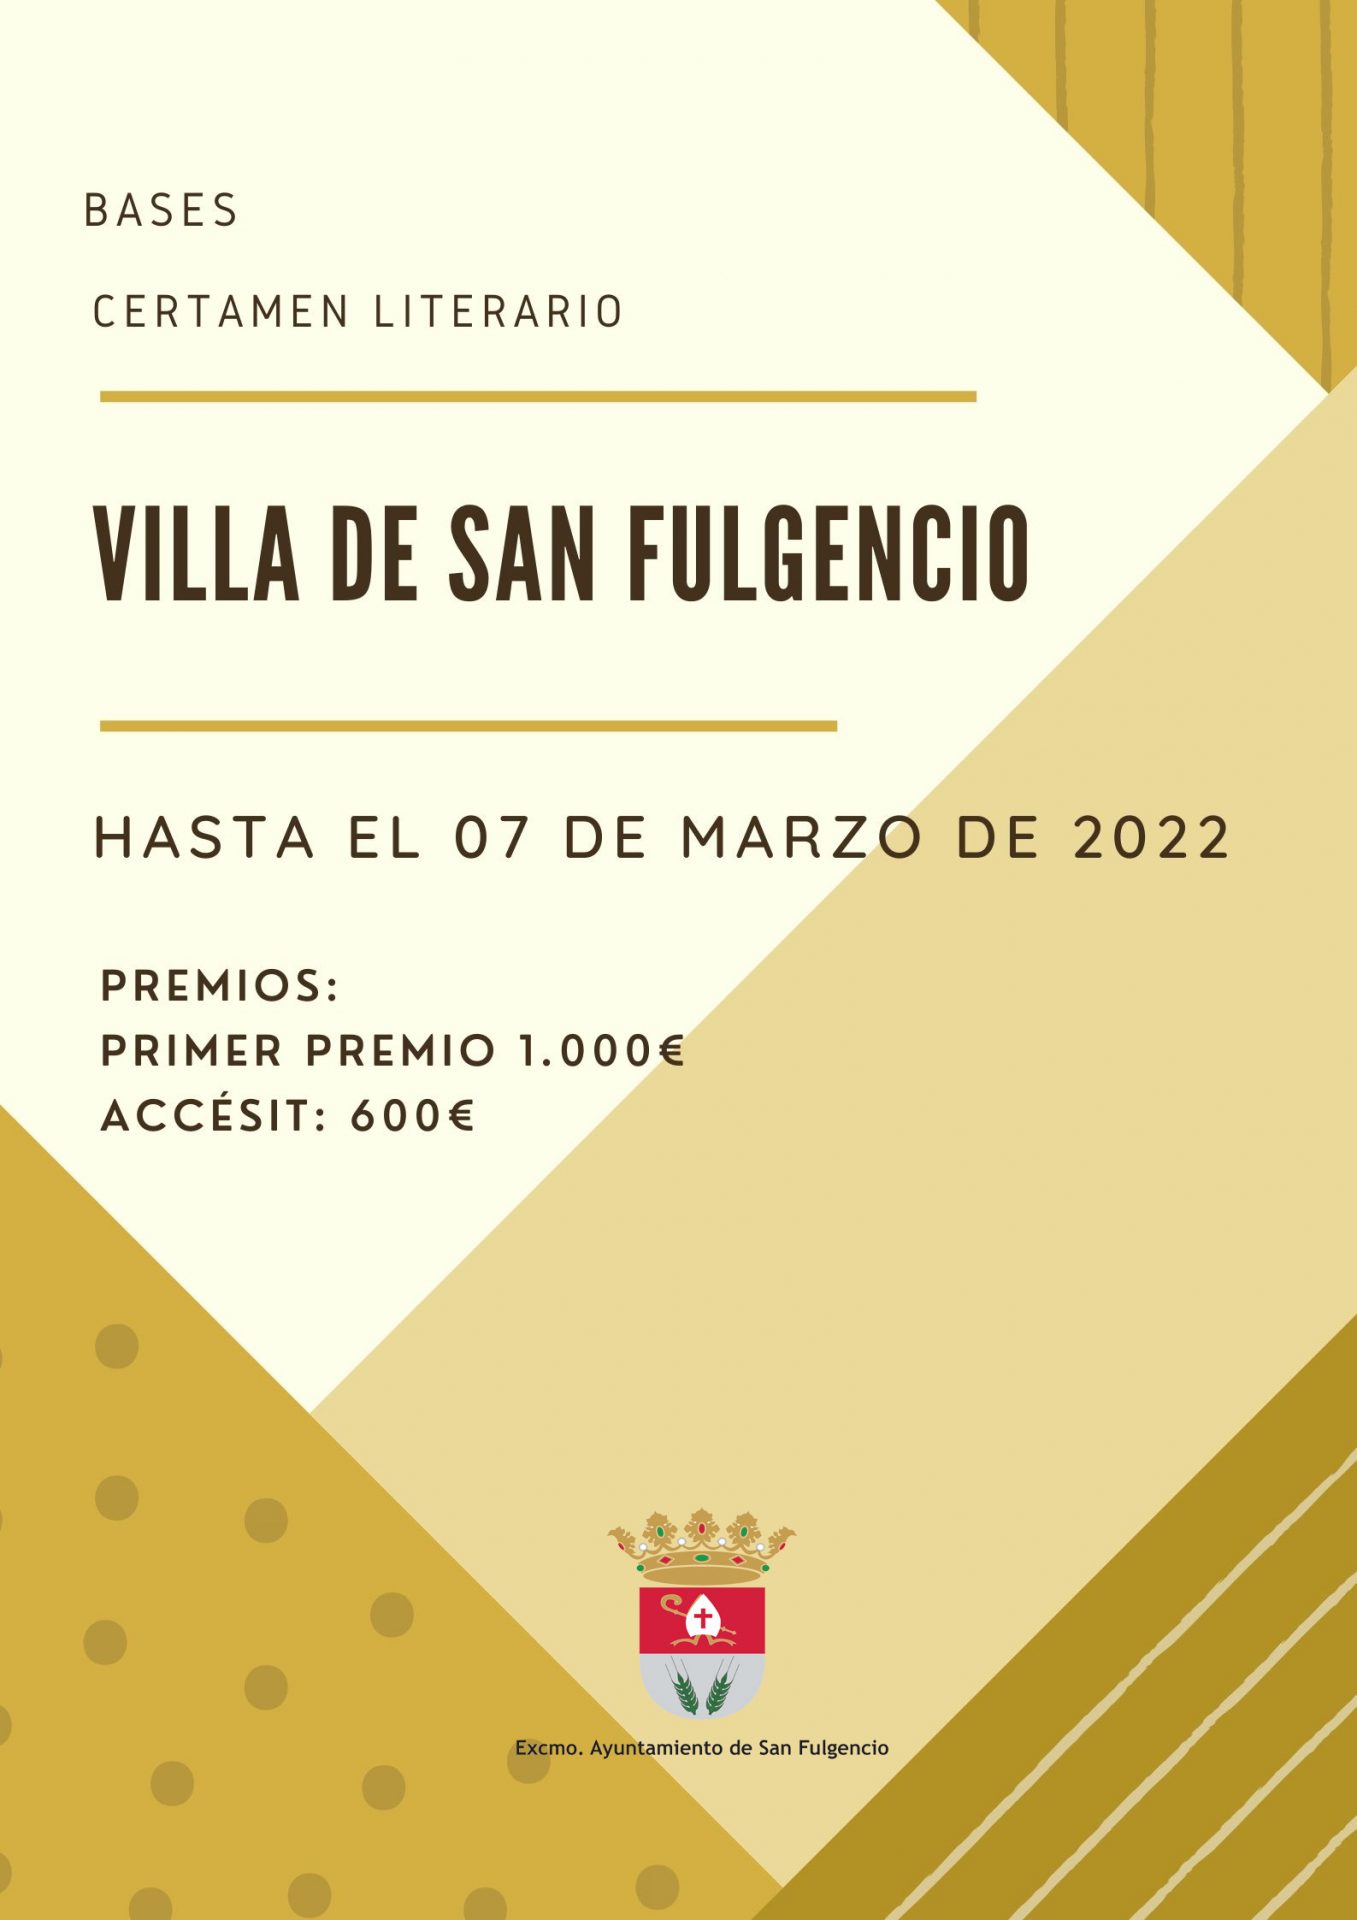 El Ayuntamiento de San Fulgencio publica las bases y la convocatoria para su certamen literario de 2022